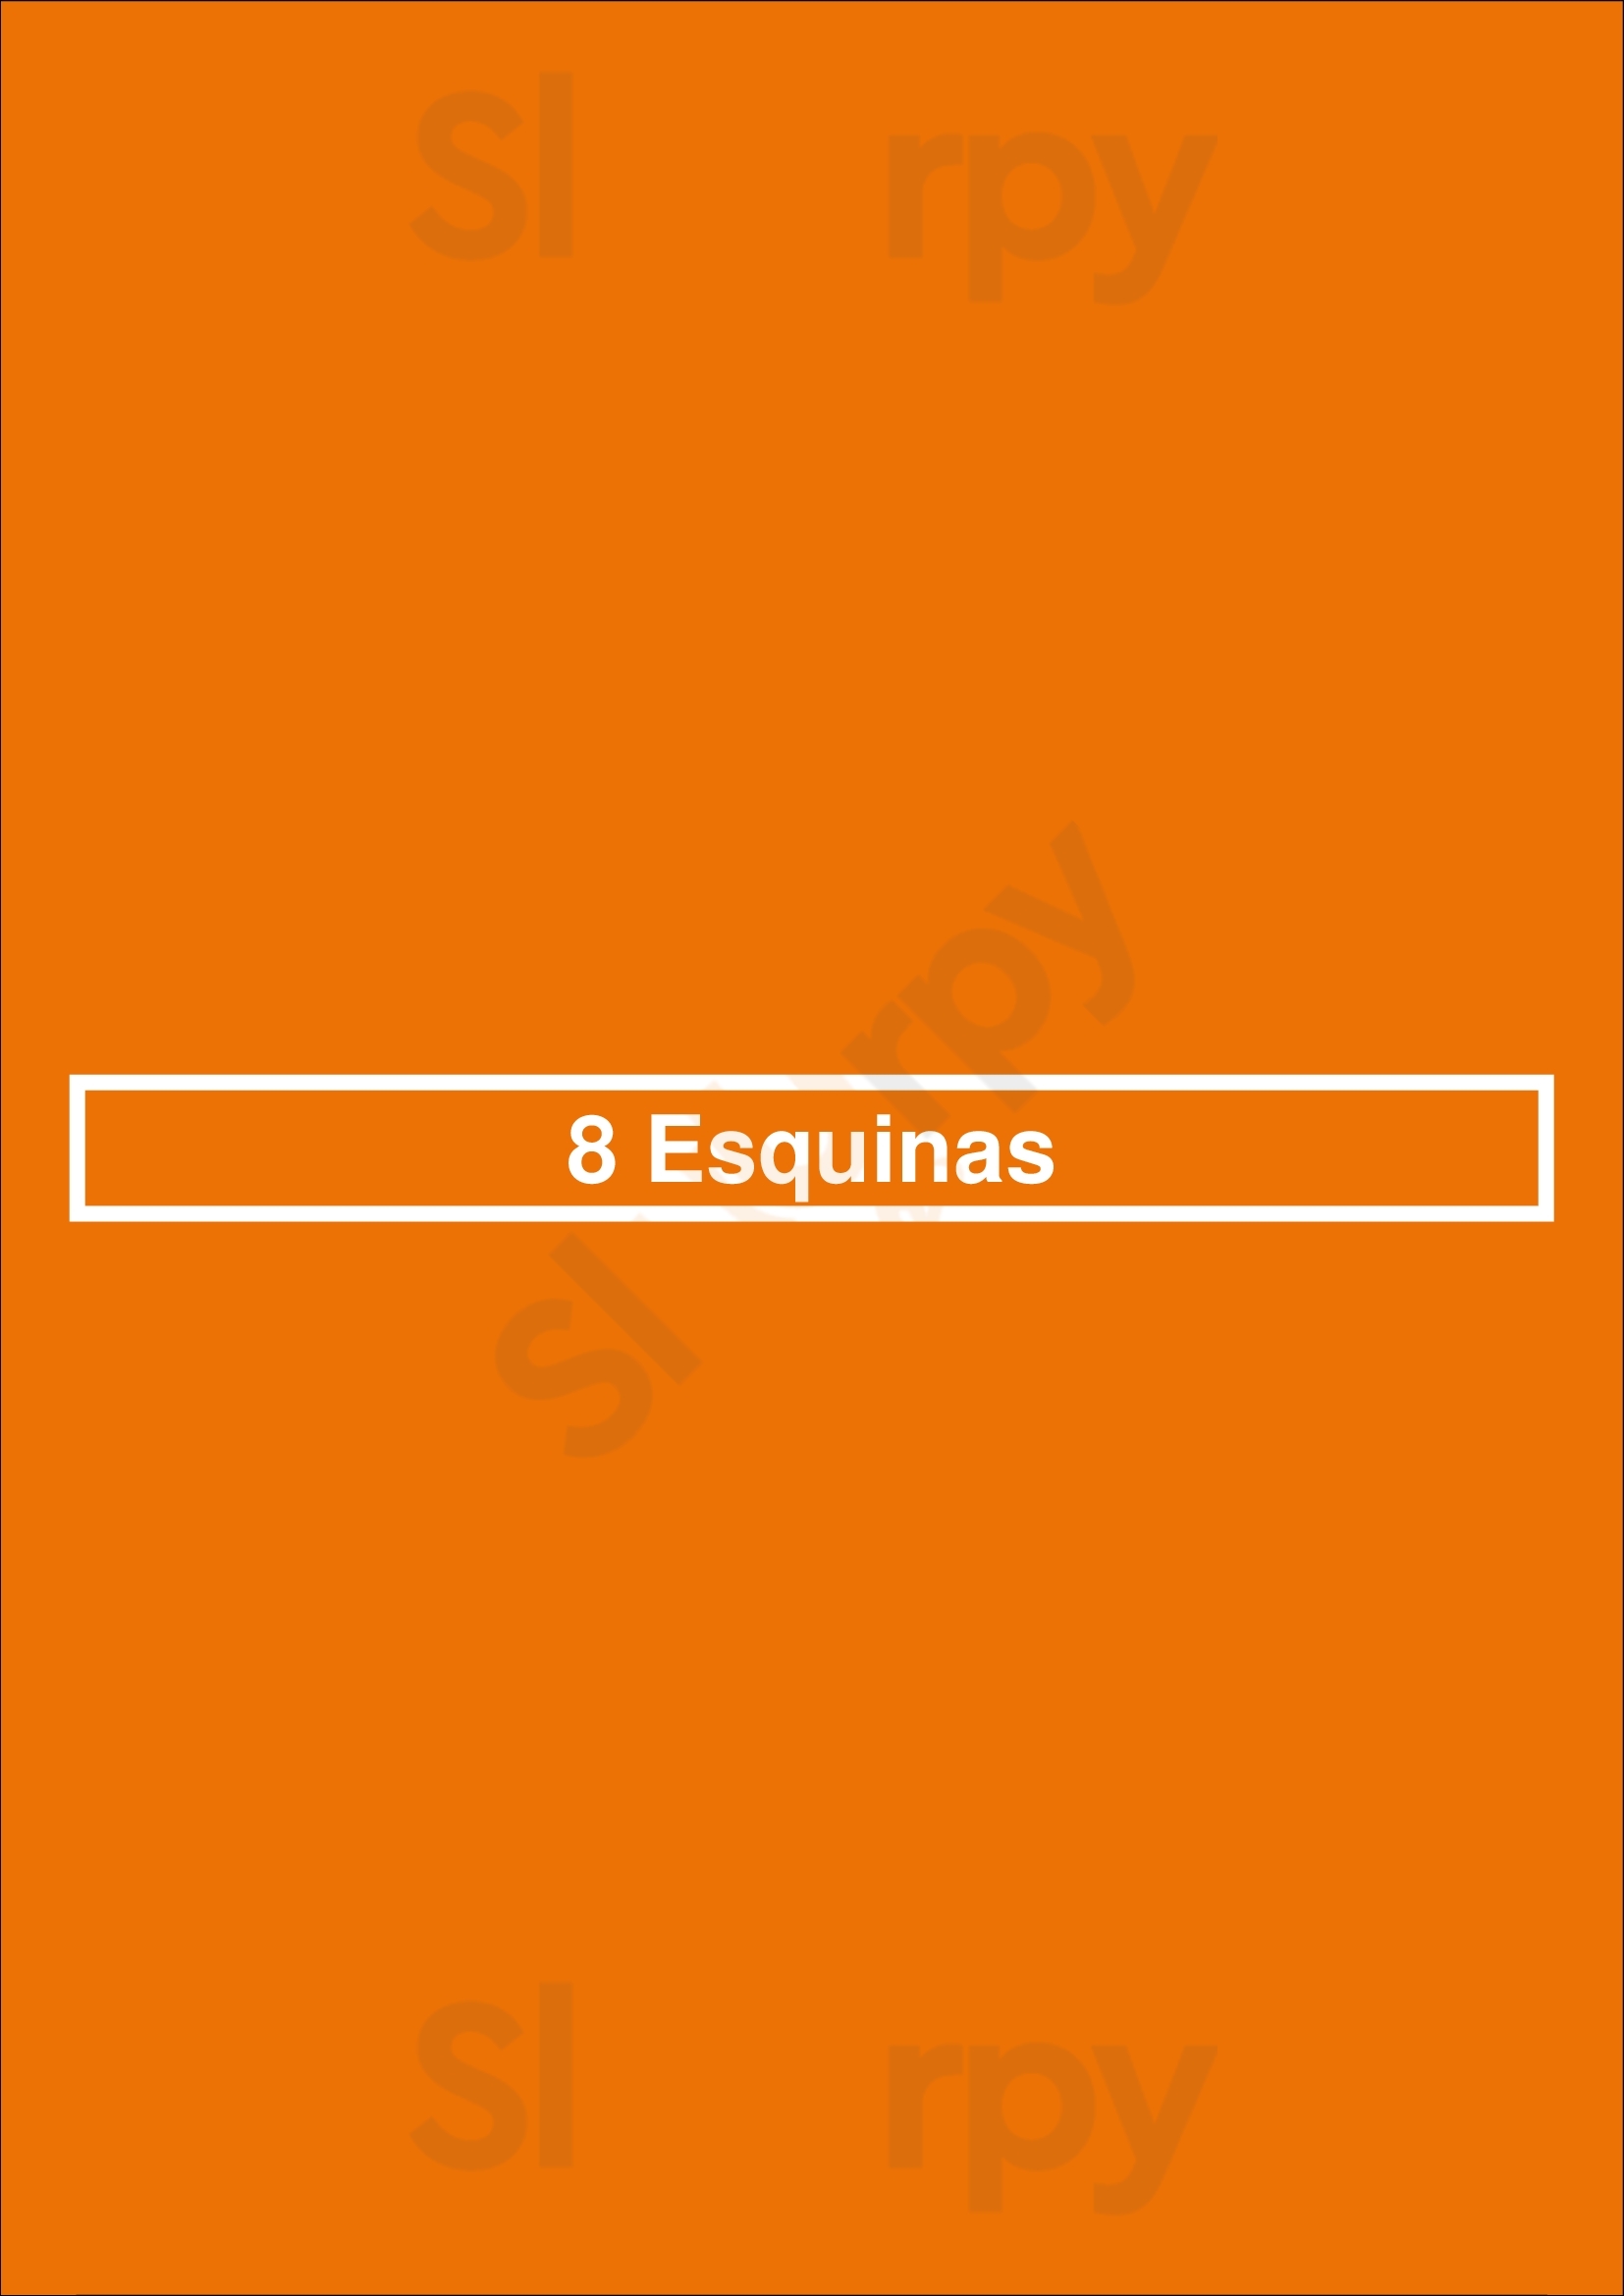 8 Esquinas Buenos Aires Menu - 1